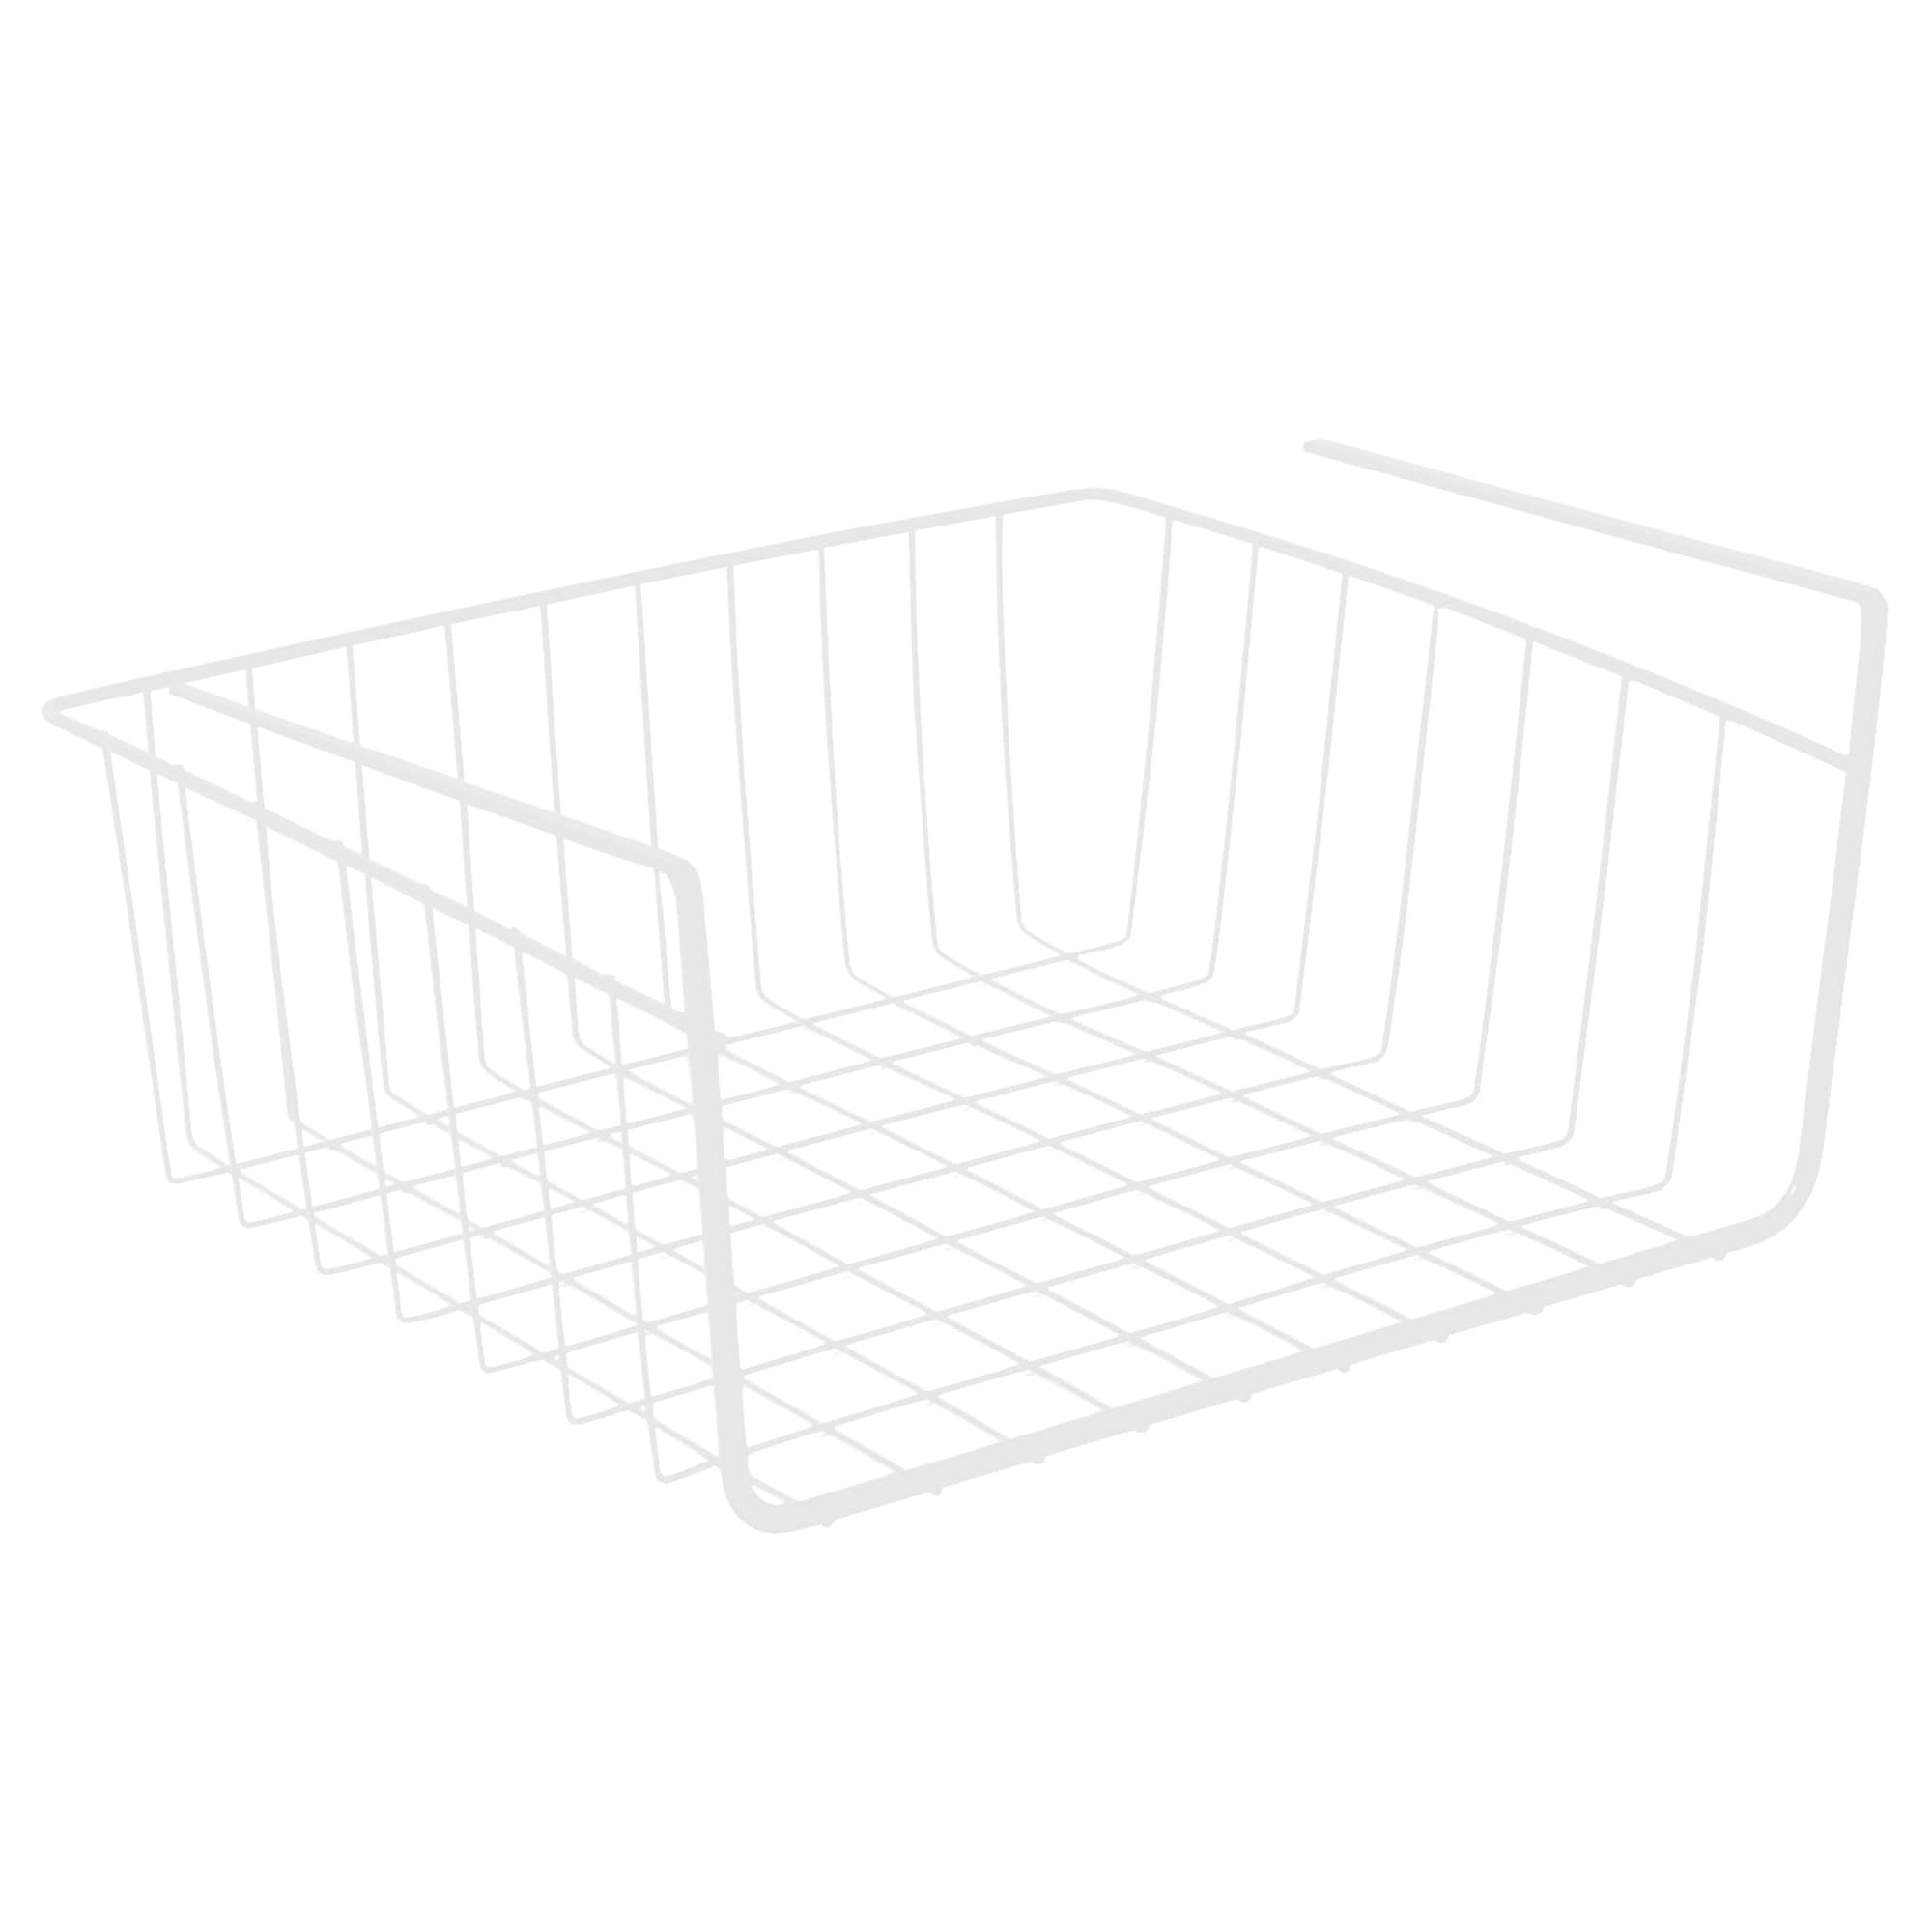 Smart Design Undershelf Storage Basket - Small - 12 x 5.5 inch - White 